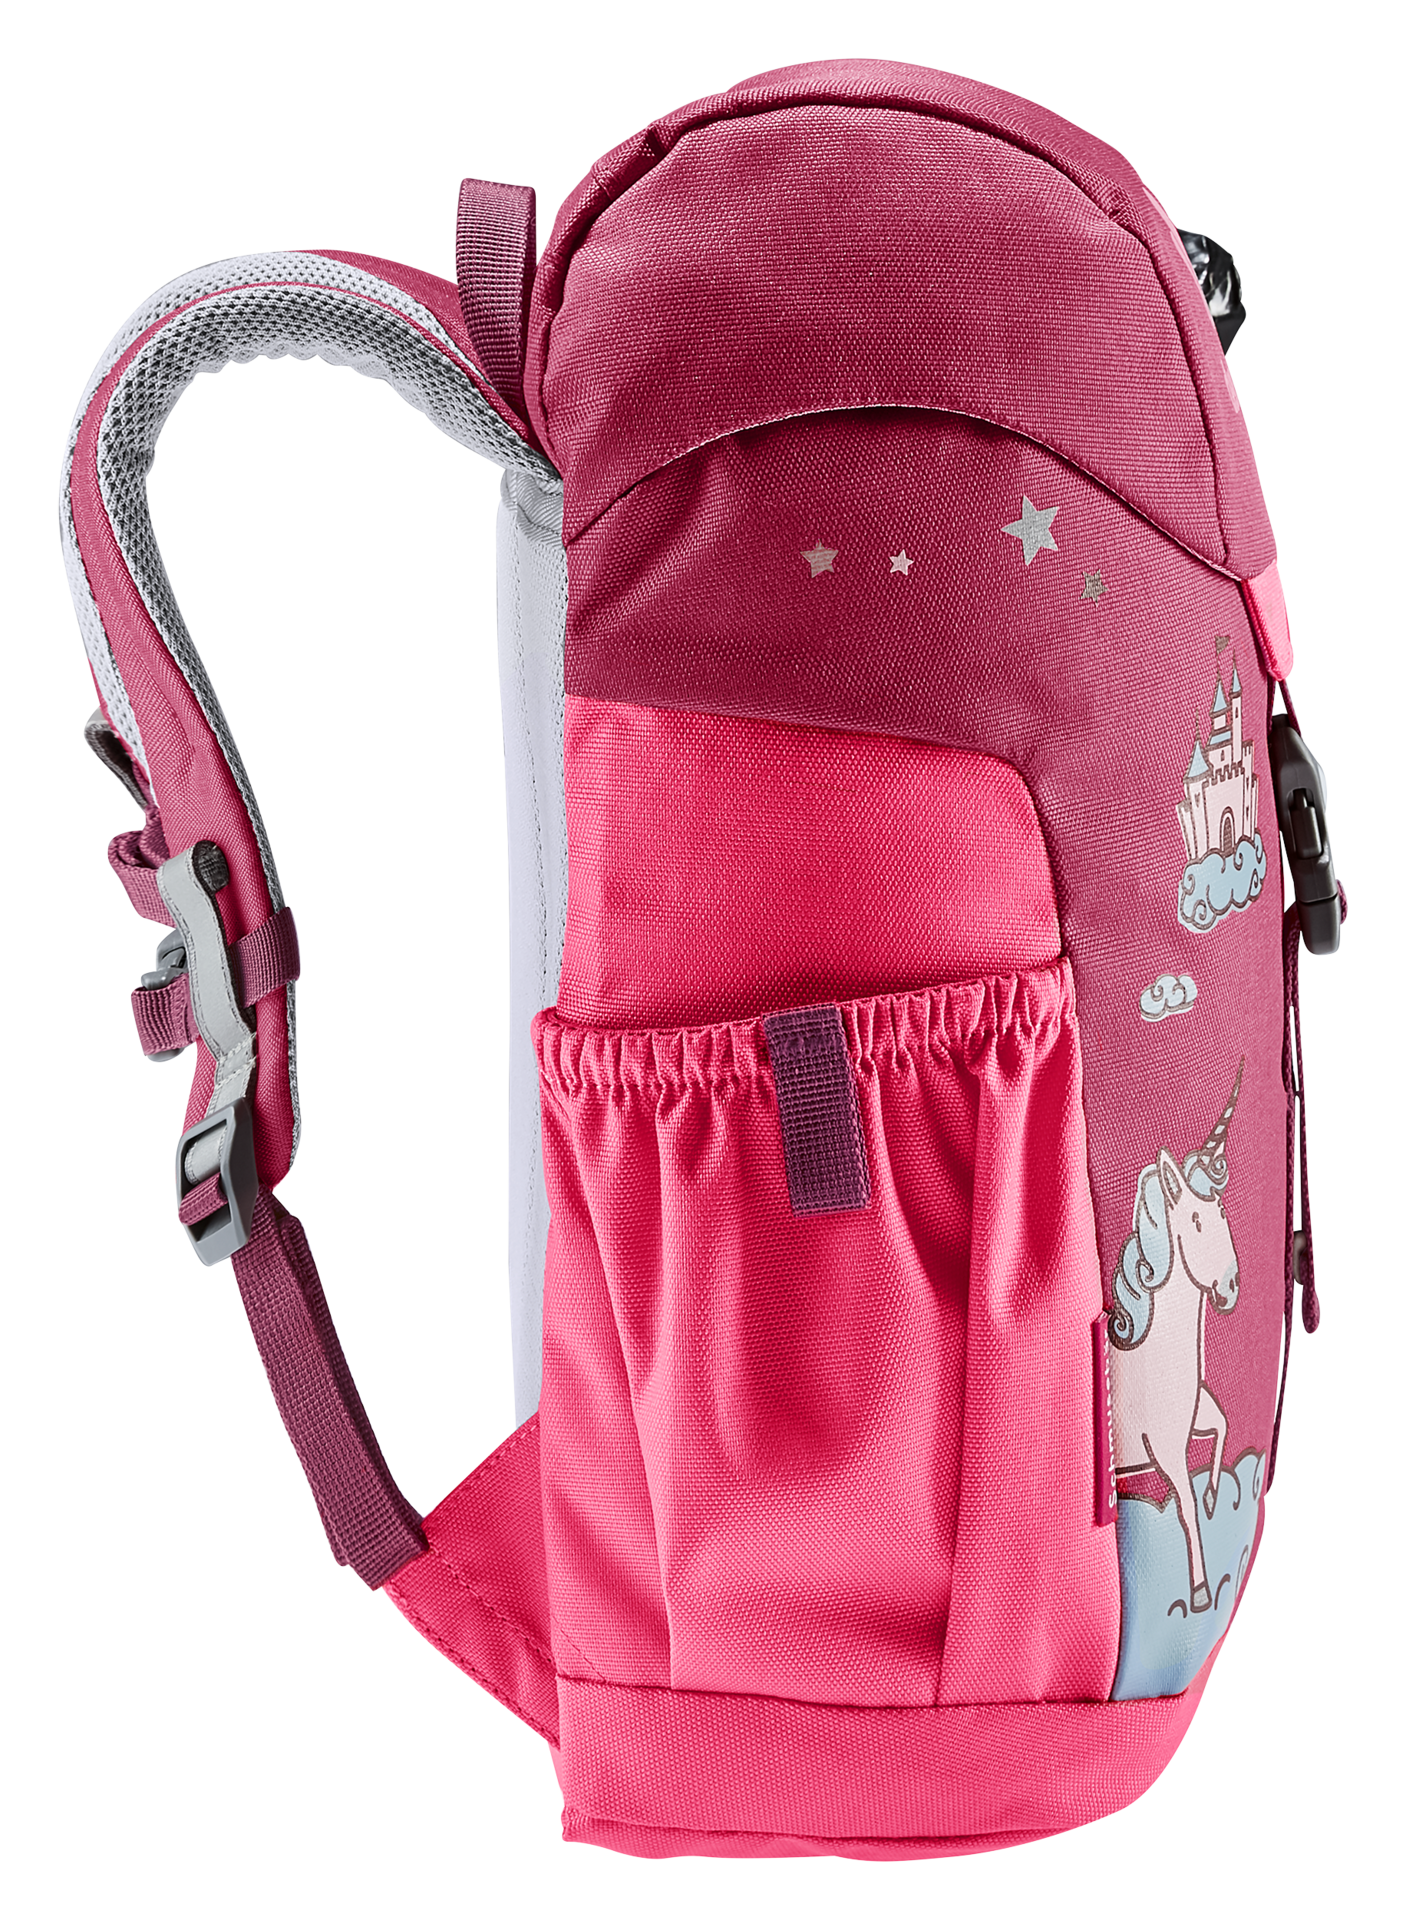 Deuter Kinder-Rucksack <br> Schmusebär 8L<br> bequem & leicht<br> mit Brustgurt und herausnehmbarem Sitzkissen<br> ab ca. 3.5 Jahren 24-30cm Rückenlänge